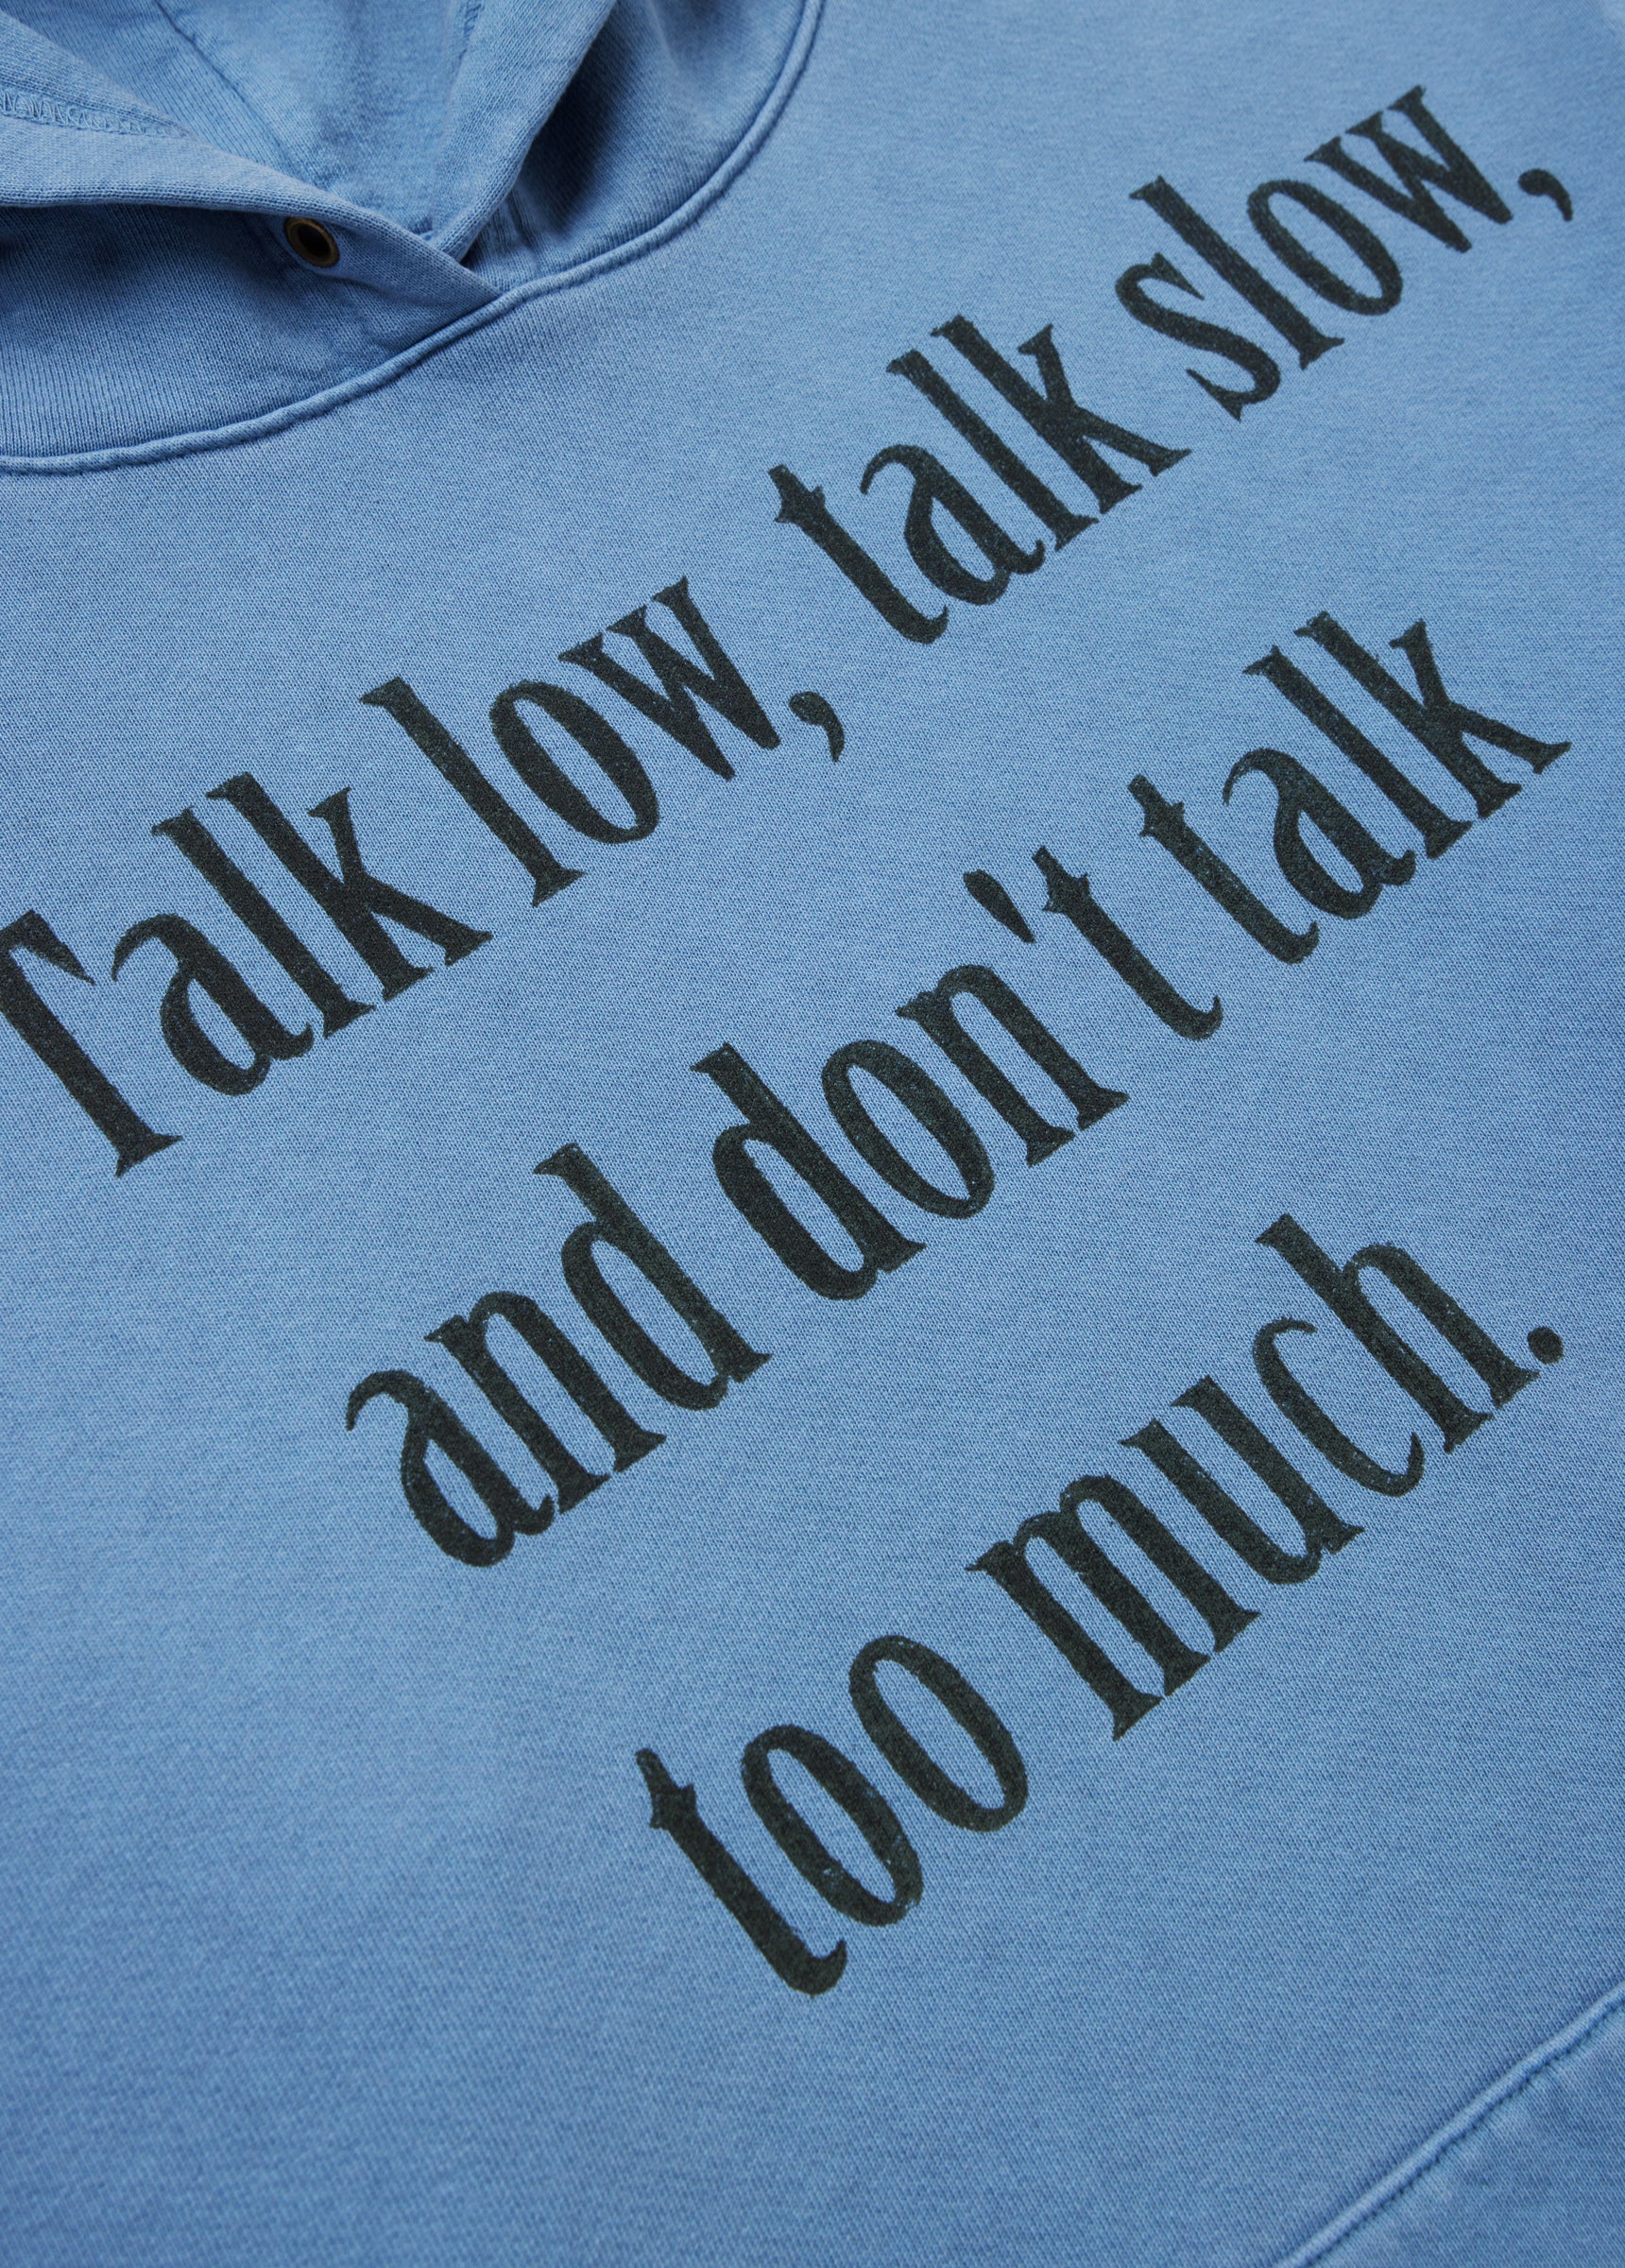 Talk Low, Talk Slow Hood Sweatshirt in Washed Blue